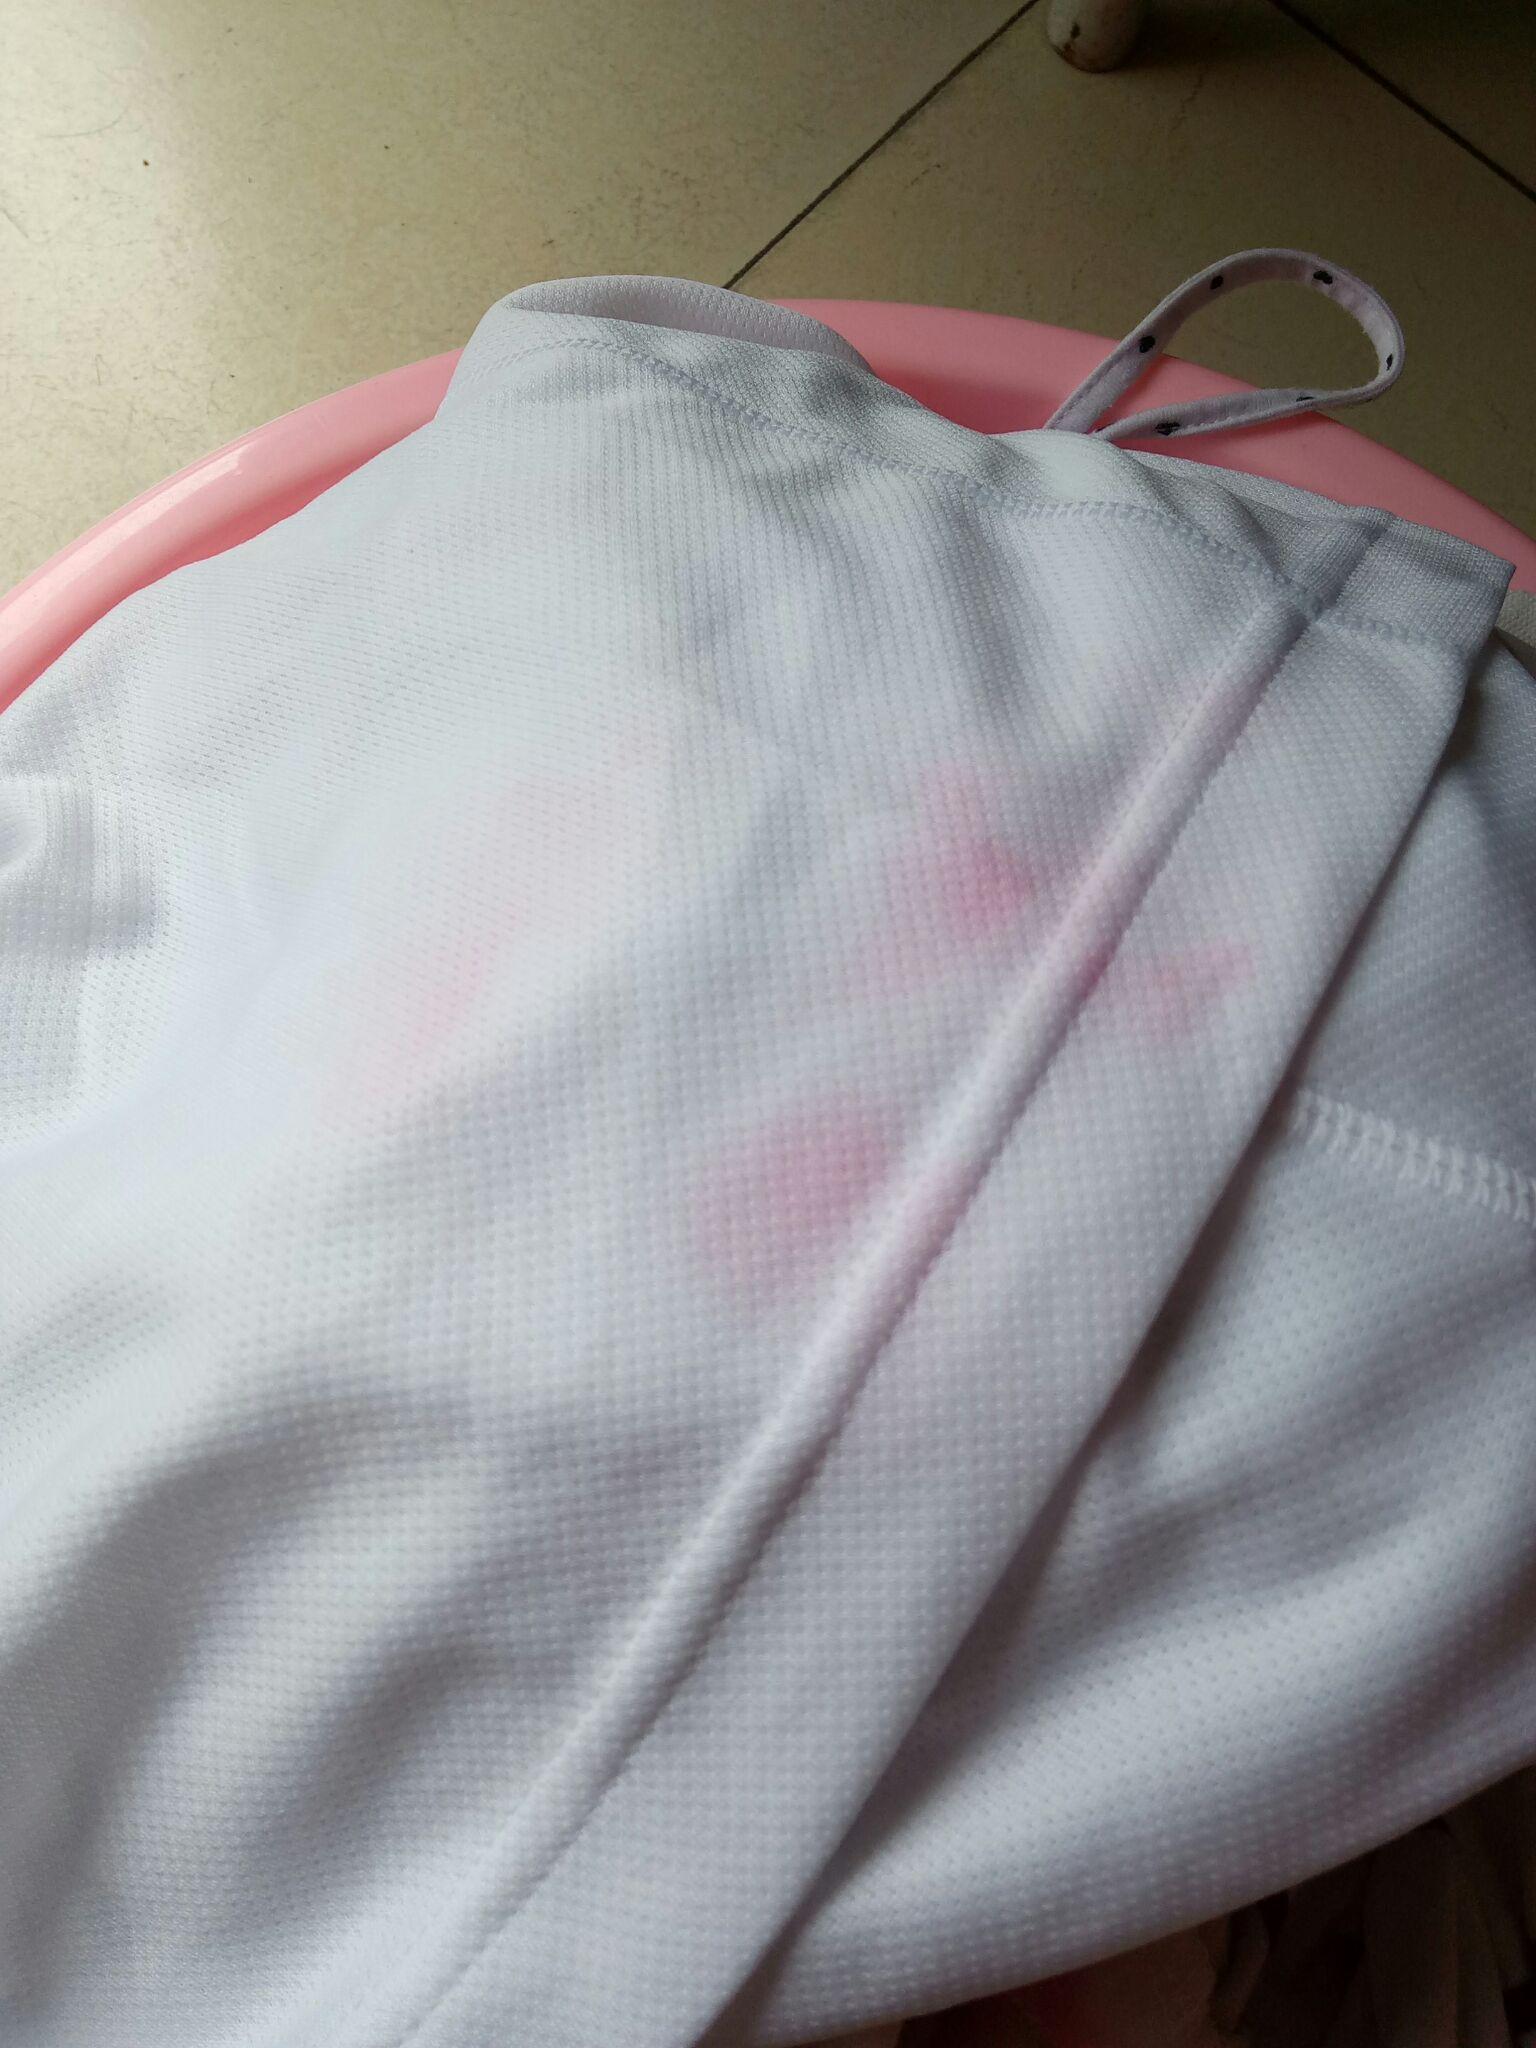 白衣服不辛在洗衣服的过程中被染红了,怎么使